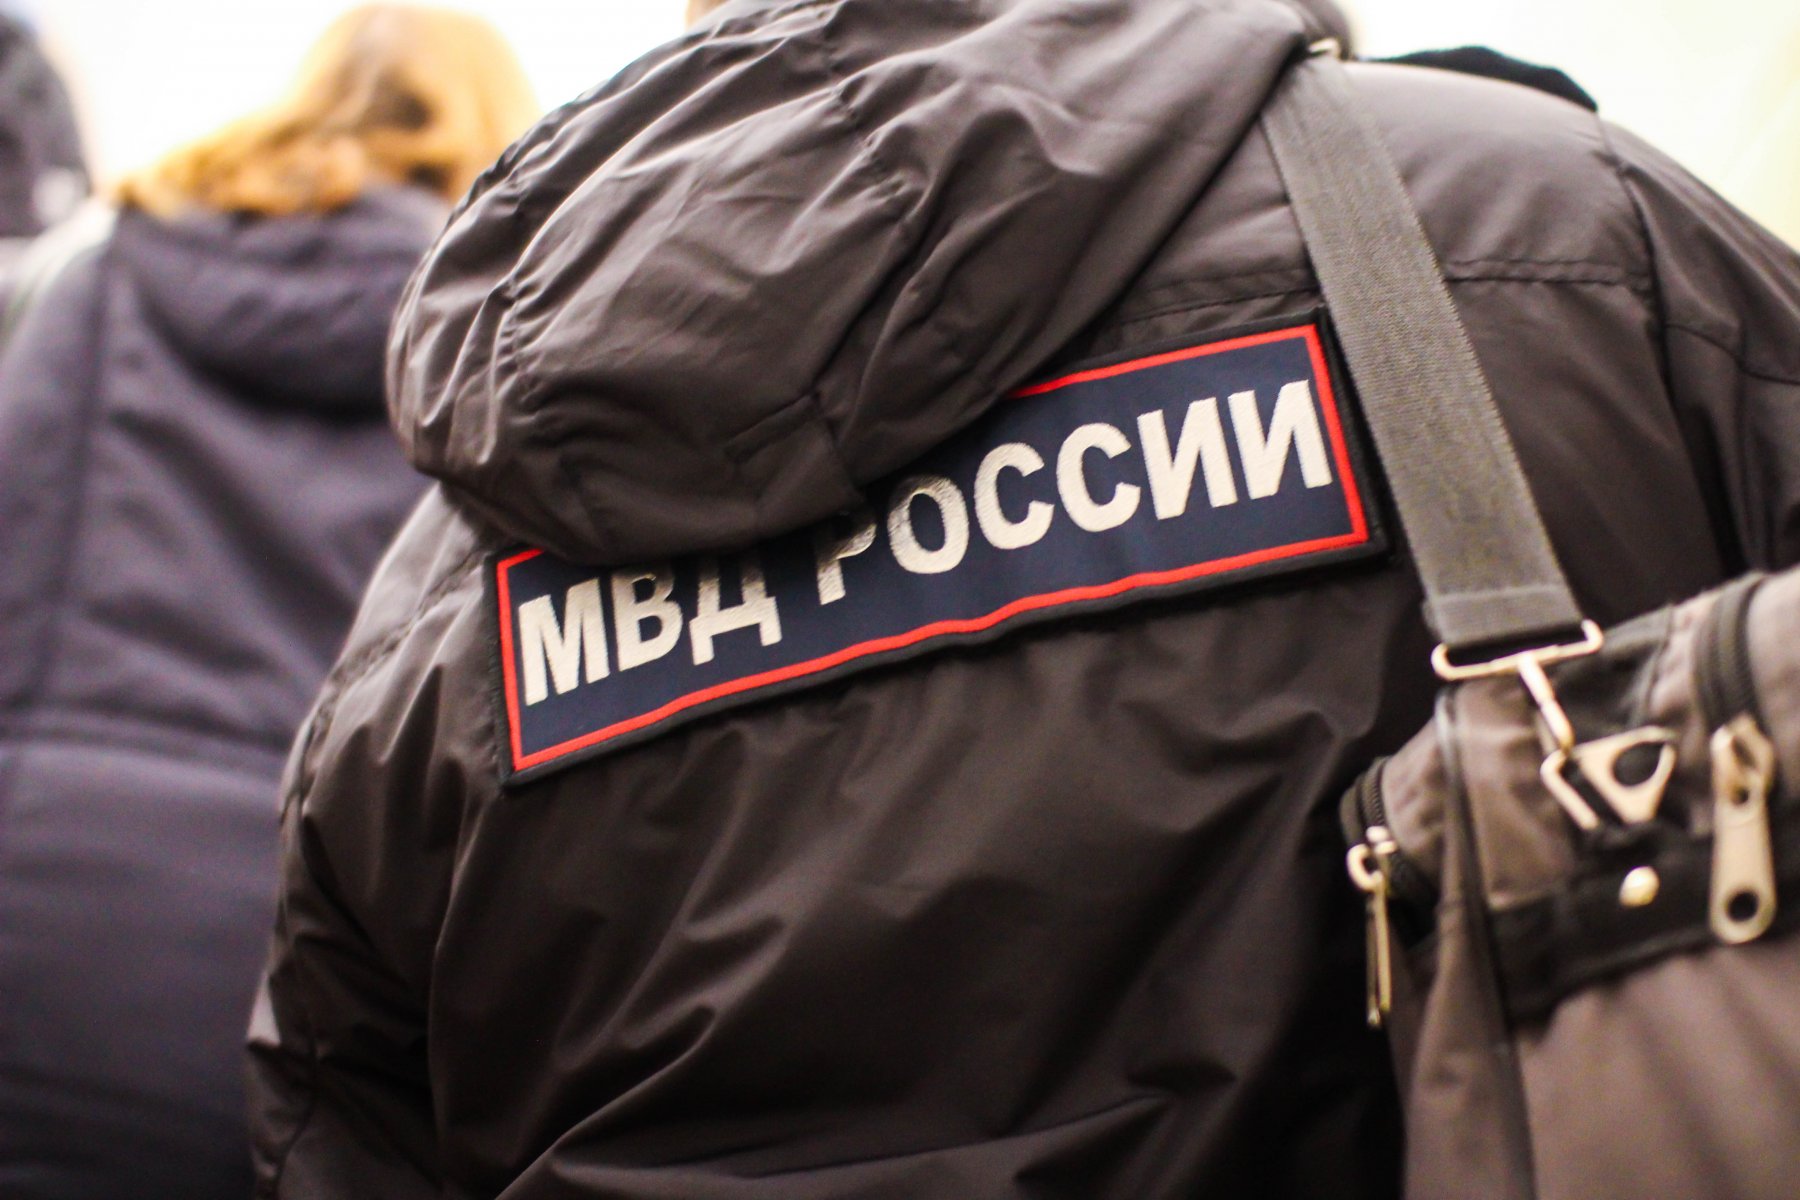 В Серпухове арестовали мужчину, изнасиловавшего подростка в подъезде дома 4 года назад